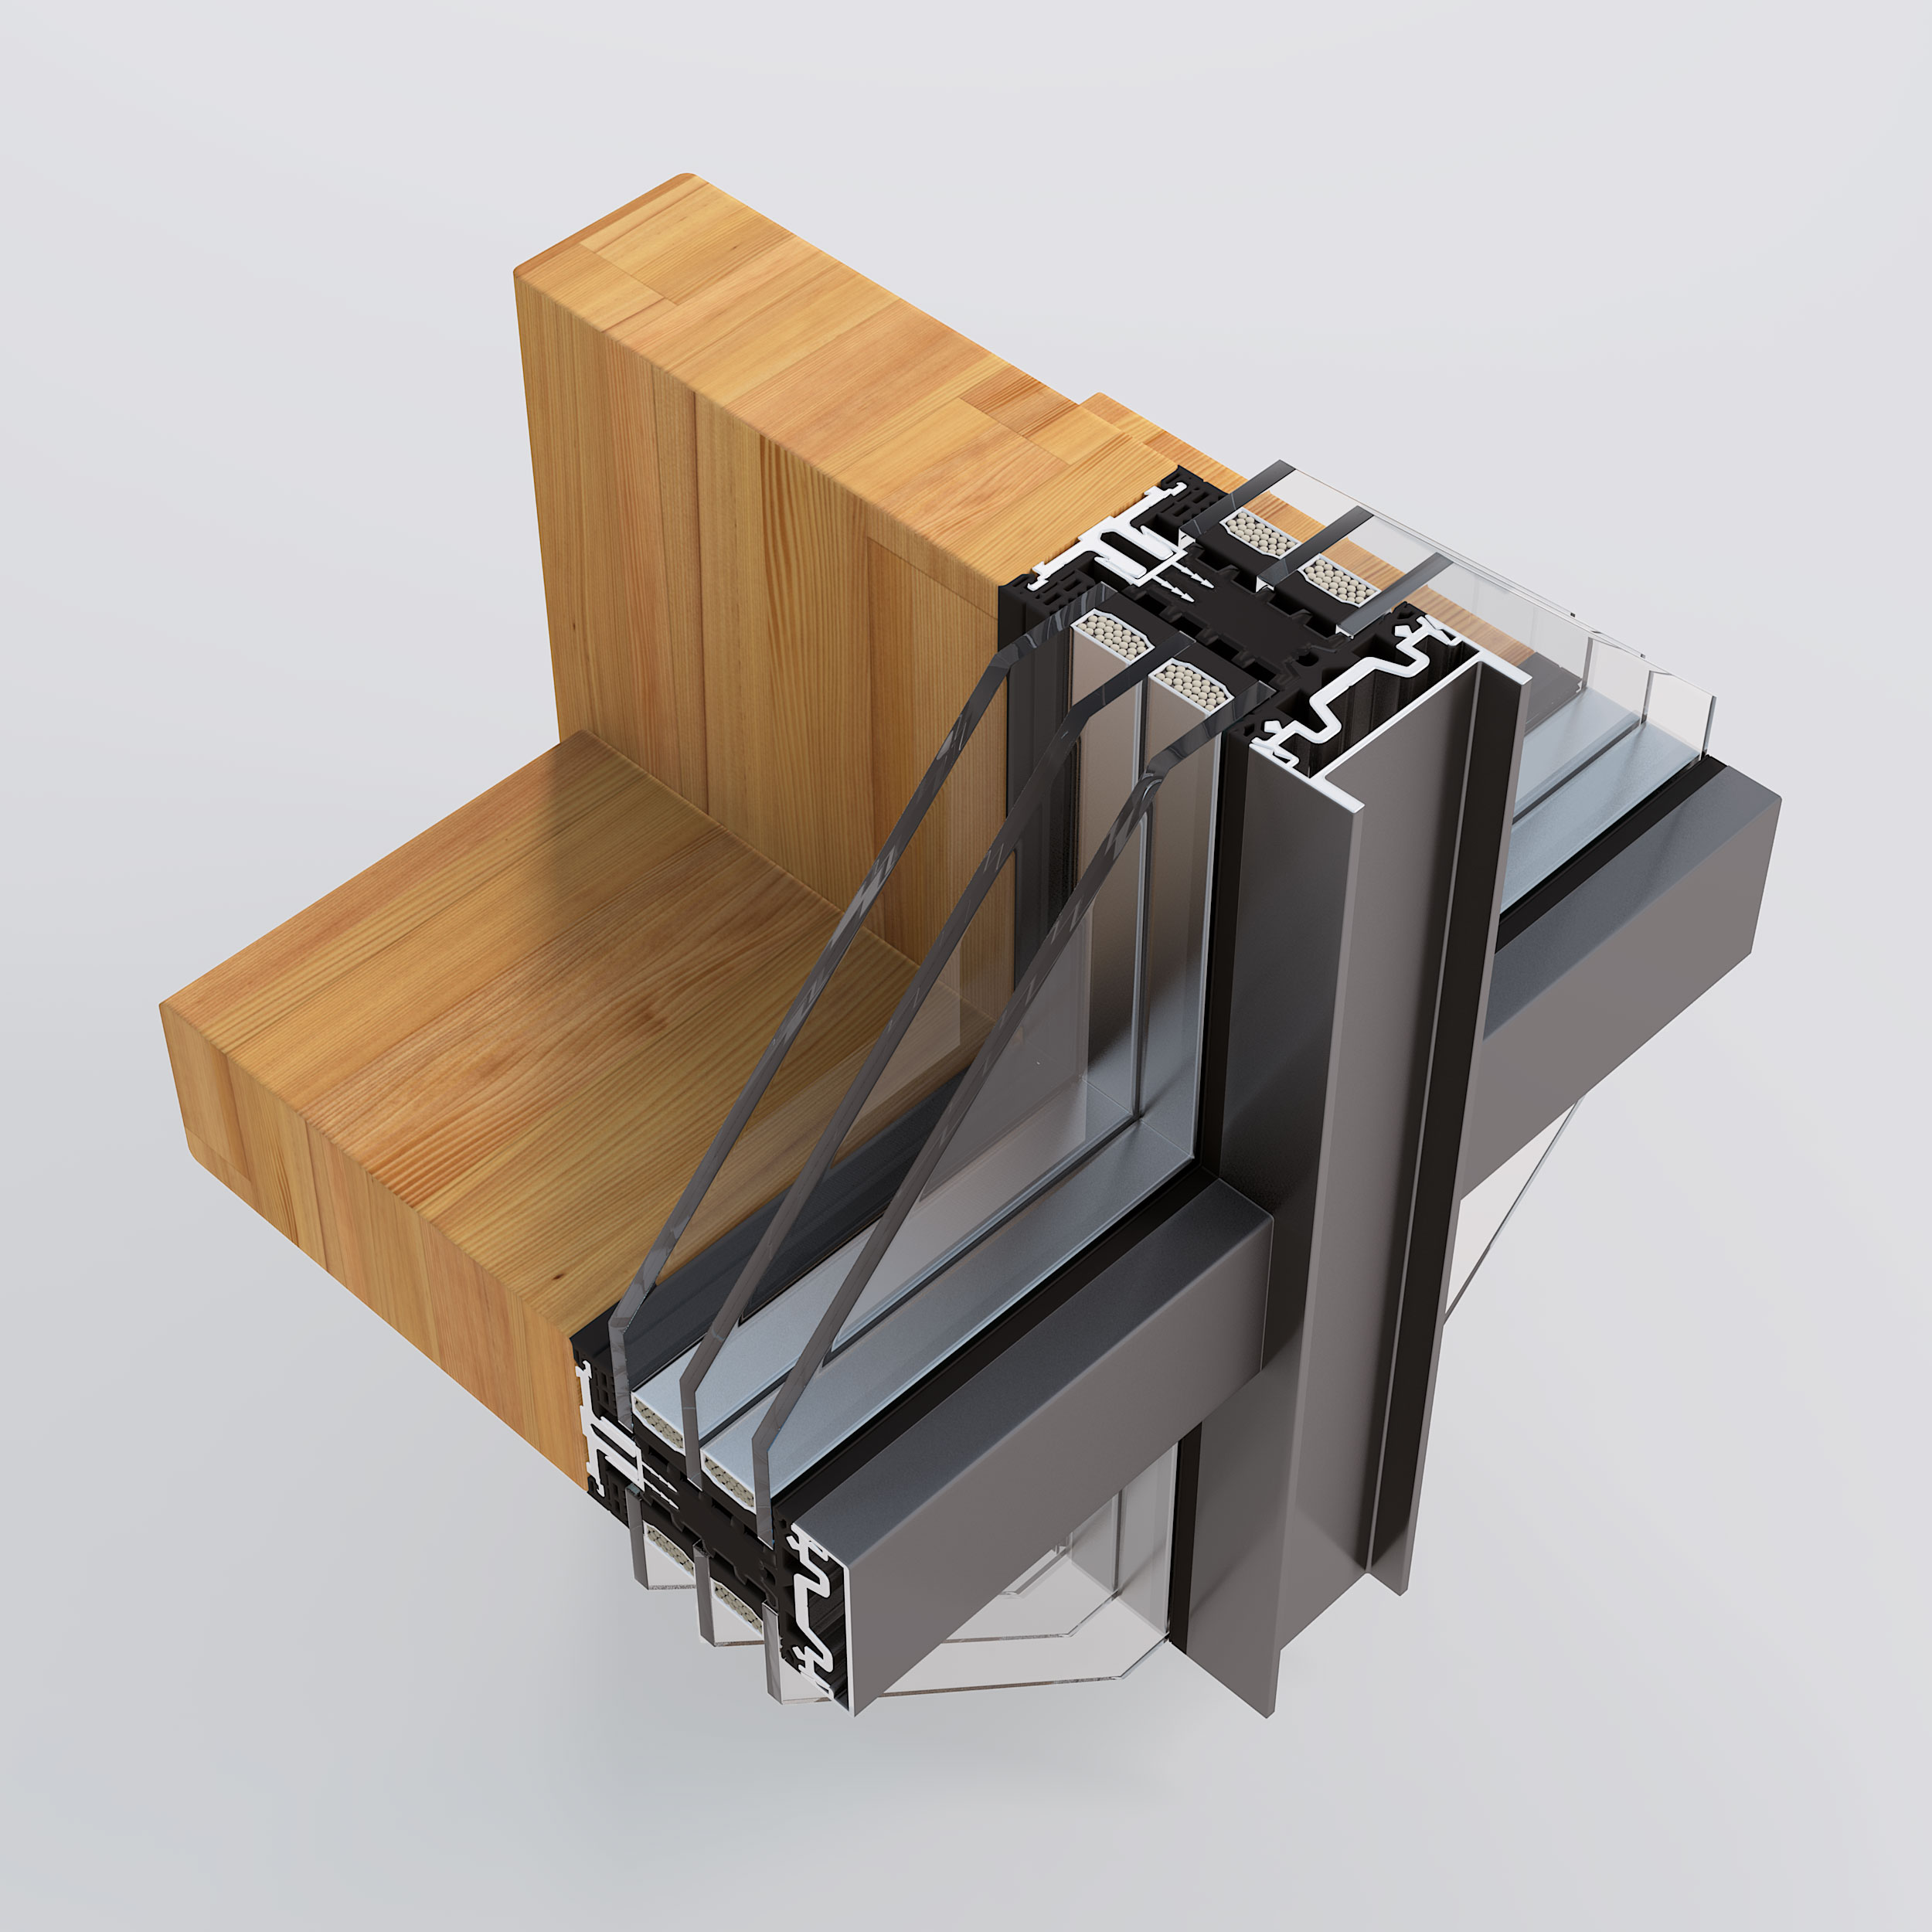 Tamplarie din lemn placat cu aluminiu - solutia ideala pentru case pasive - Tamplarie din lemn